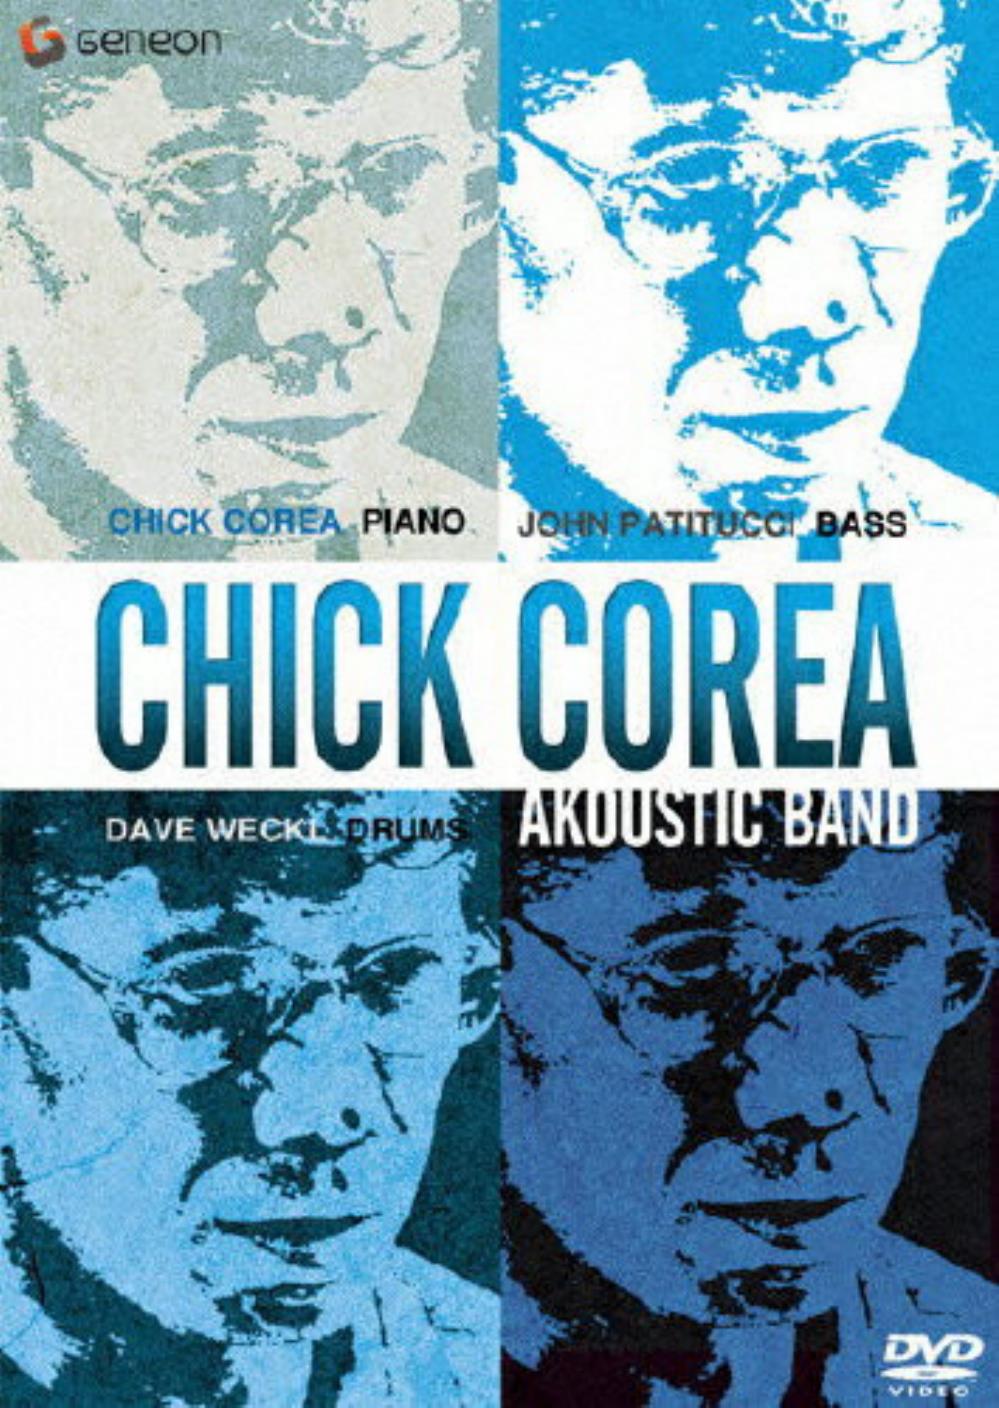 Chick Corea Chick Corea Akoustic Band album cover